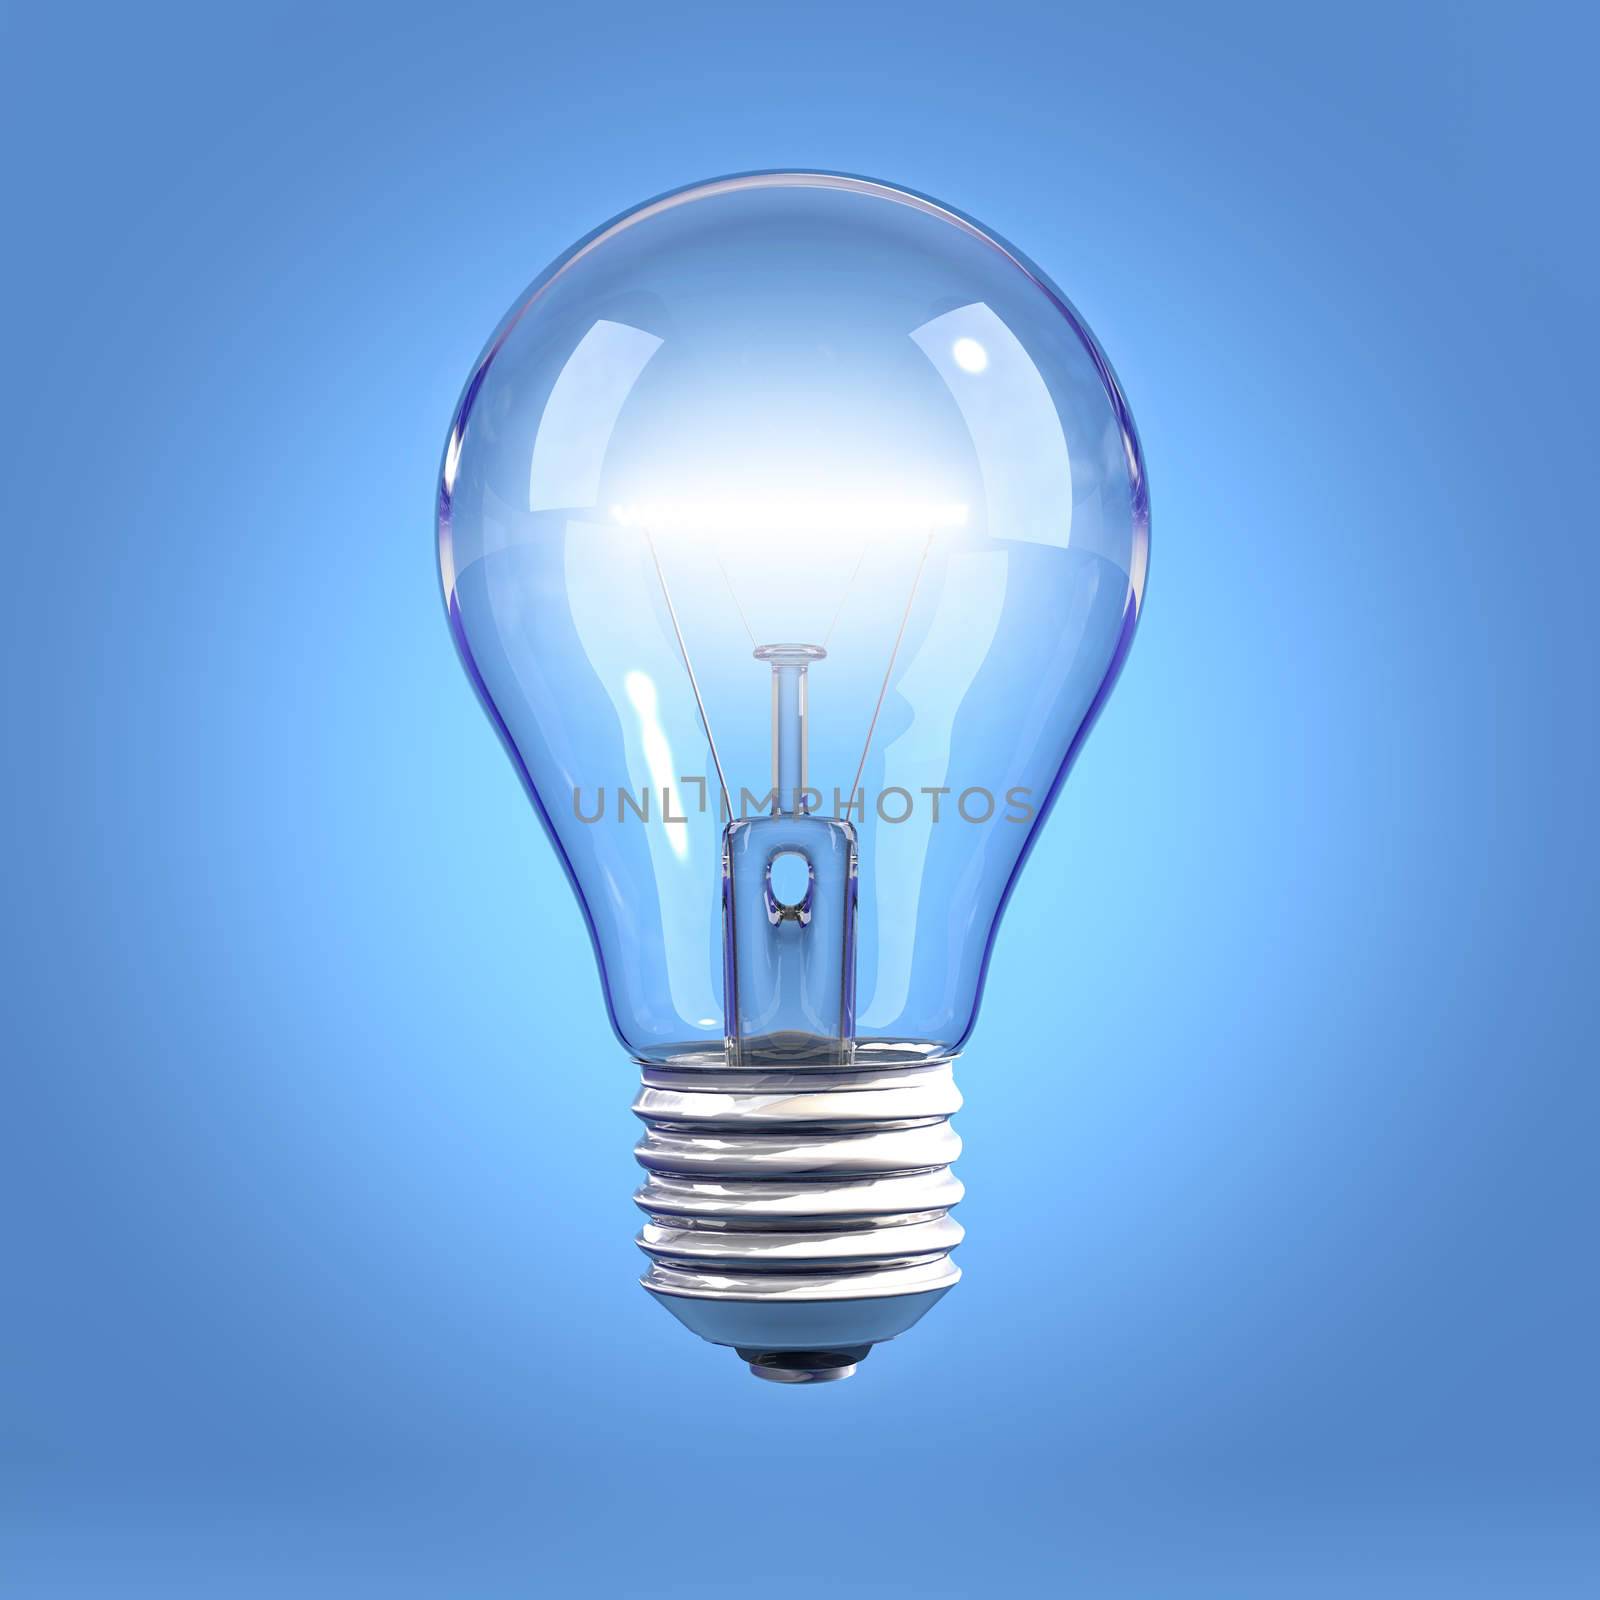 Incandescent light bulb on blue background